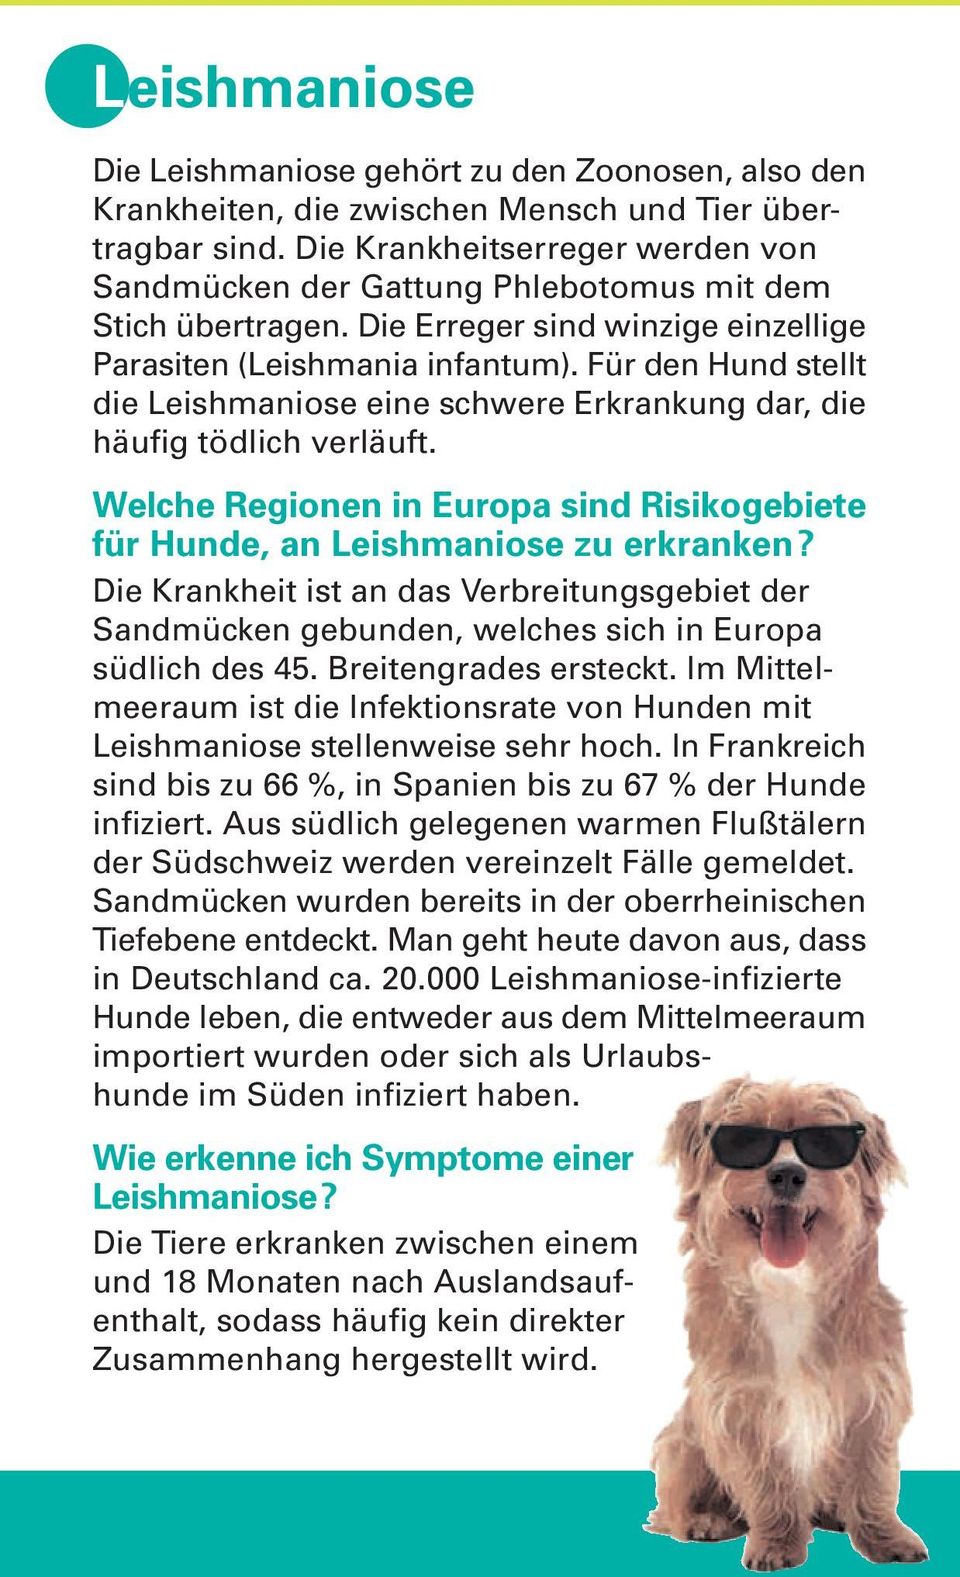 Für den Hund stellt die Leishmaniose eine schwere Erkrankung dar, die häufig tödlich verläuft. Welche Regionen in Europa sind Risikogebiete für Hunde, an Leishmaniose zu erkranken?